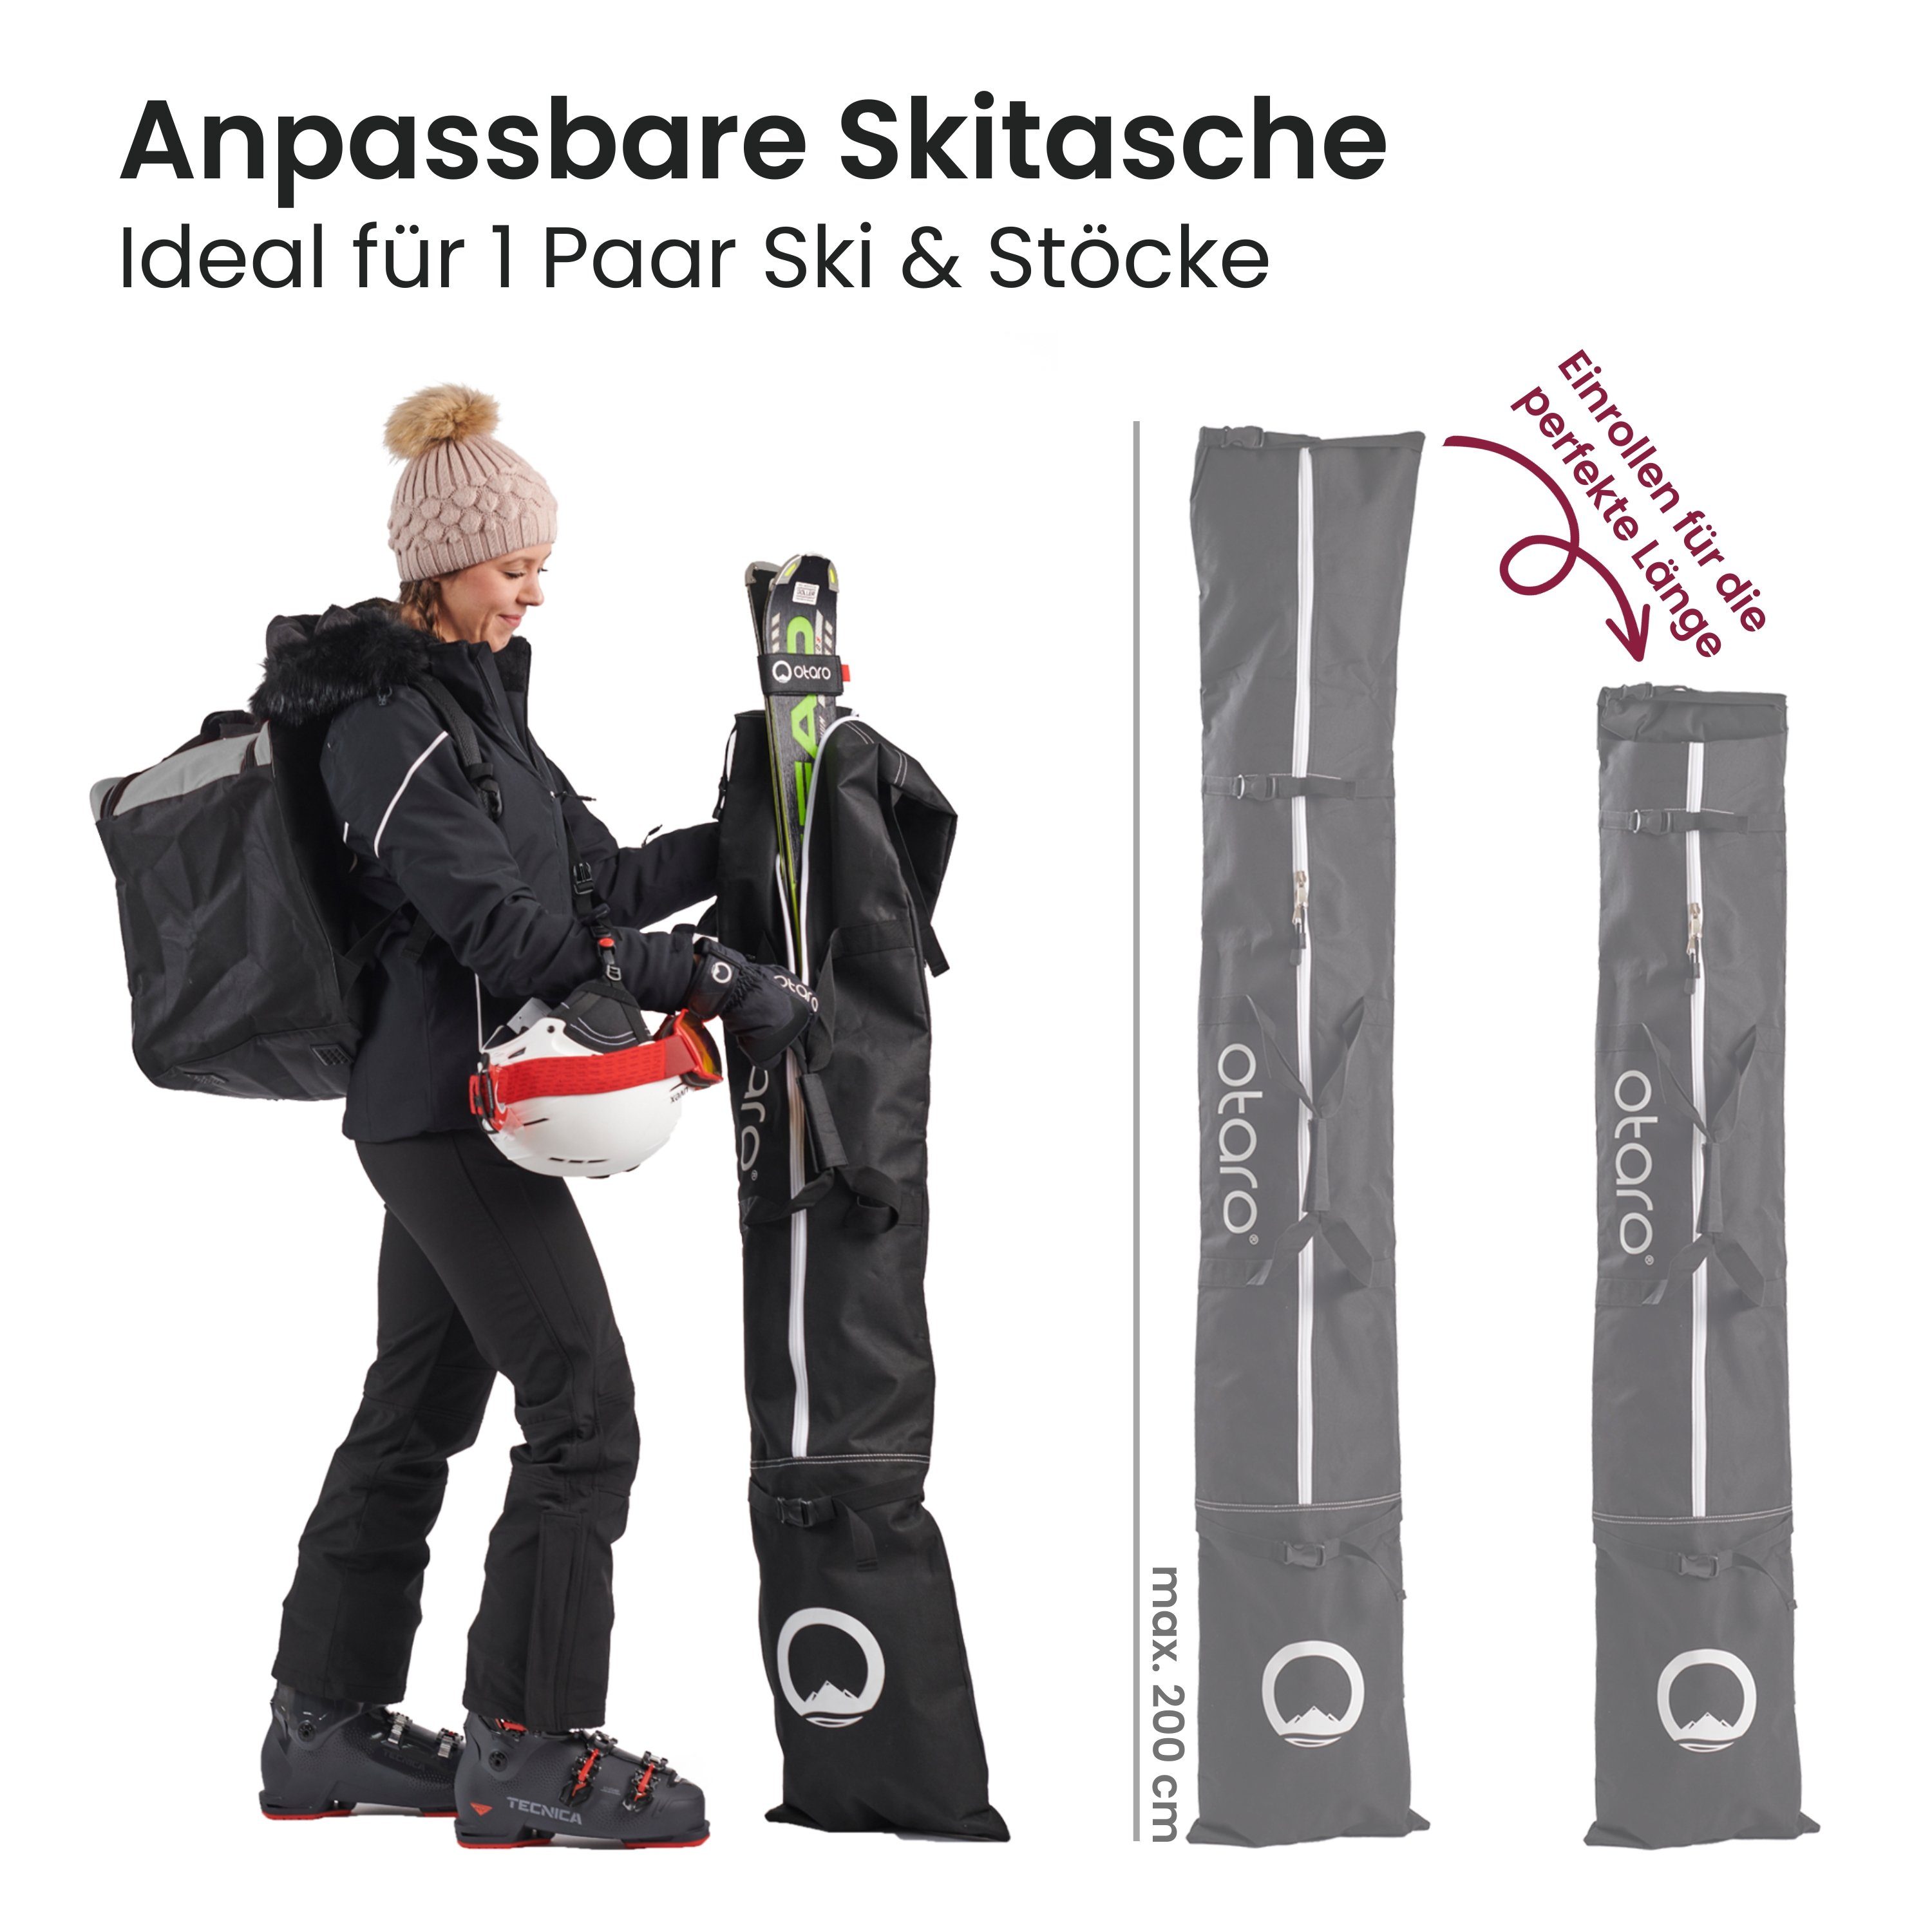 & längenverstellbar, Paar Skitasche Perfekt 2 Skifahren/Langlauf) zum Otaro Stöcke, Skisack oder Skitasche Ski für für Rolltop 1 Für Für 1 umhängen, (Schwarz) durchdacht, Paar Ski mit Schultergurt (Schutz